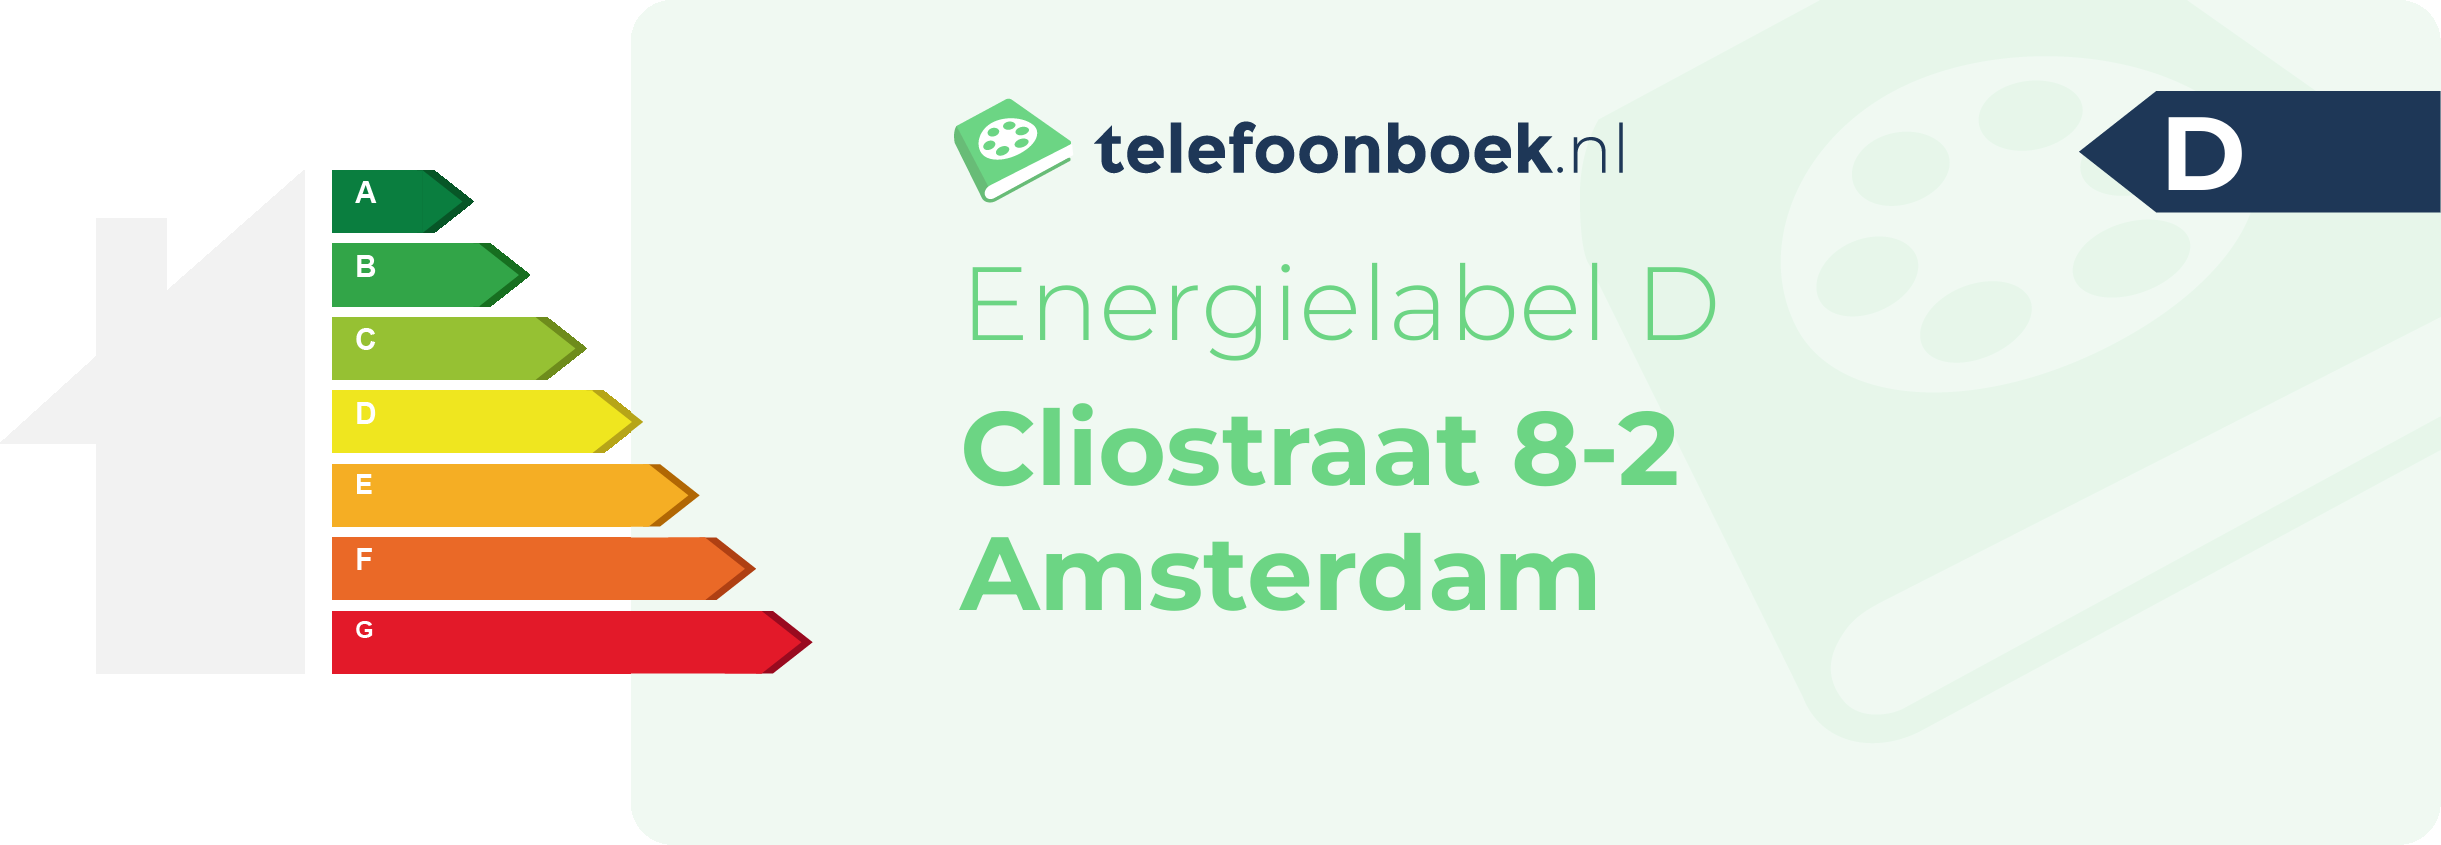 Energielabel Cliostraat 8-2 Amsterdam